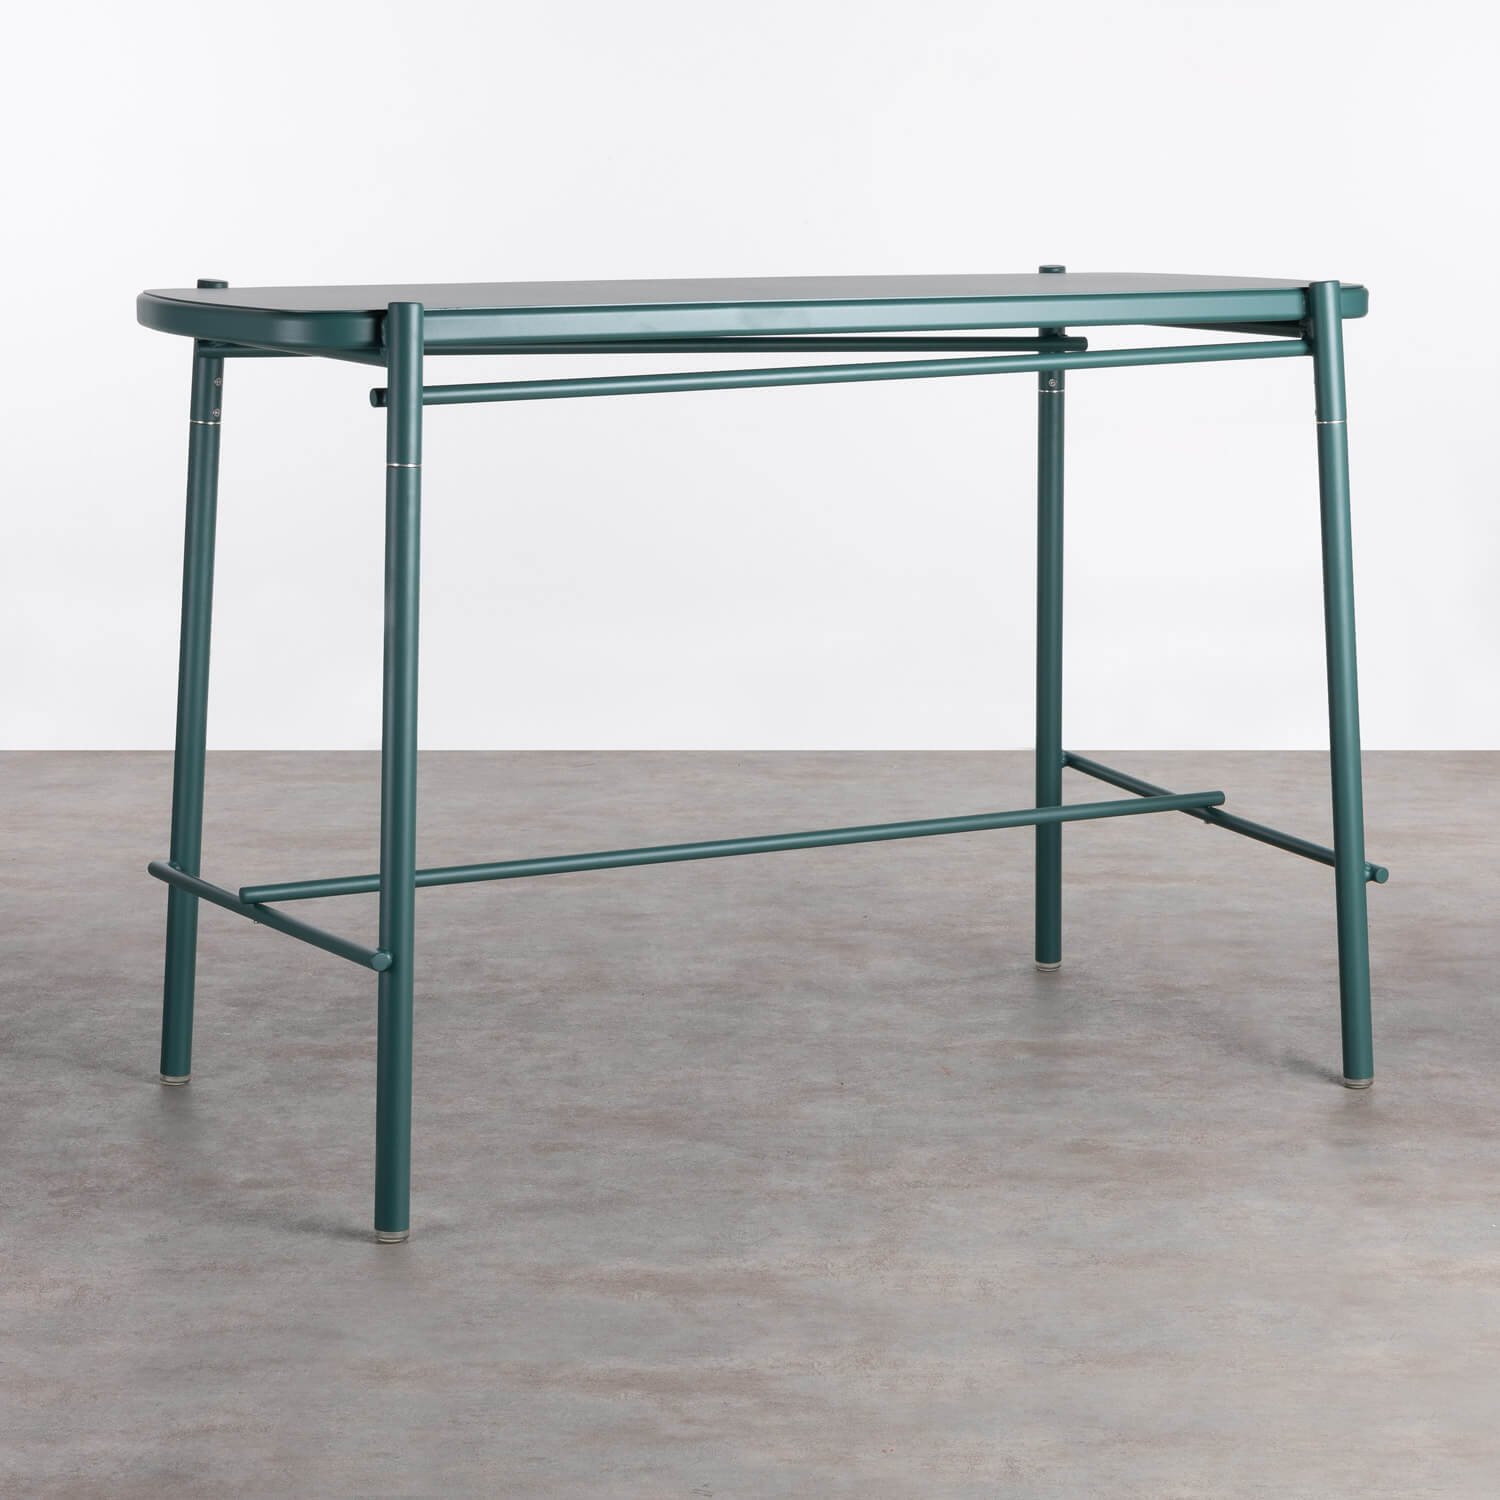 Tavolo Alto da Esterni in Alluminio (159x79,7cm) Keri, immagine della galleria 1